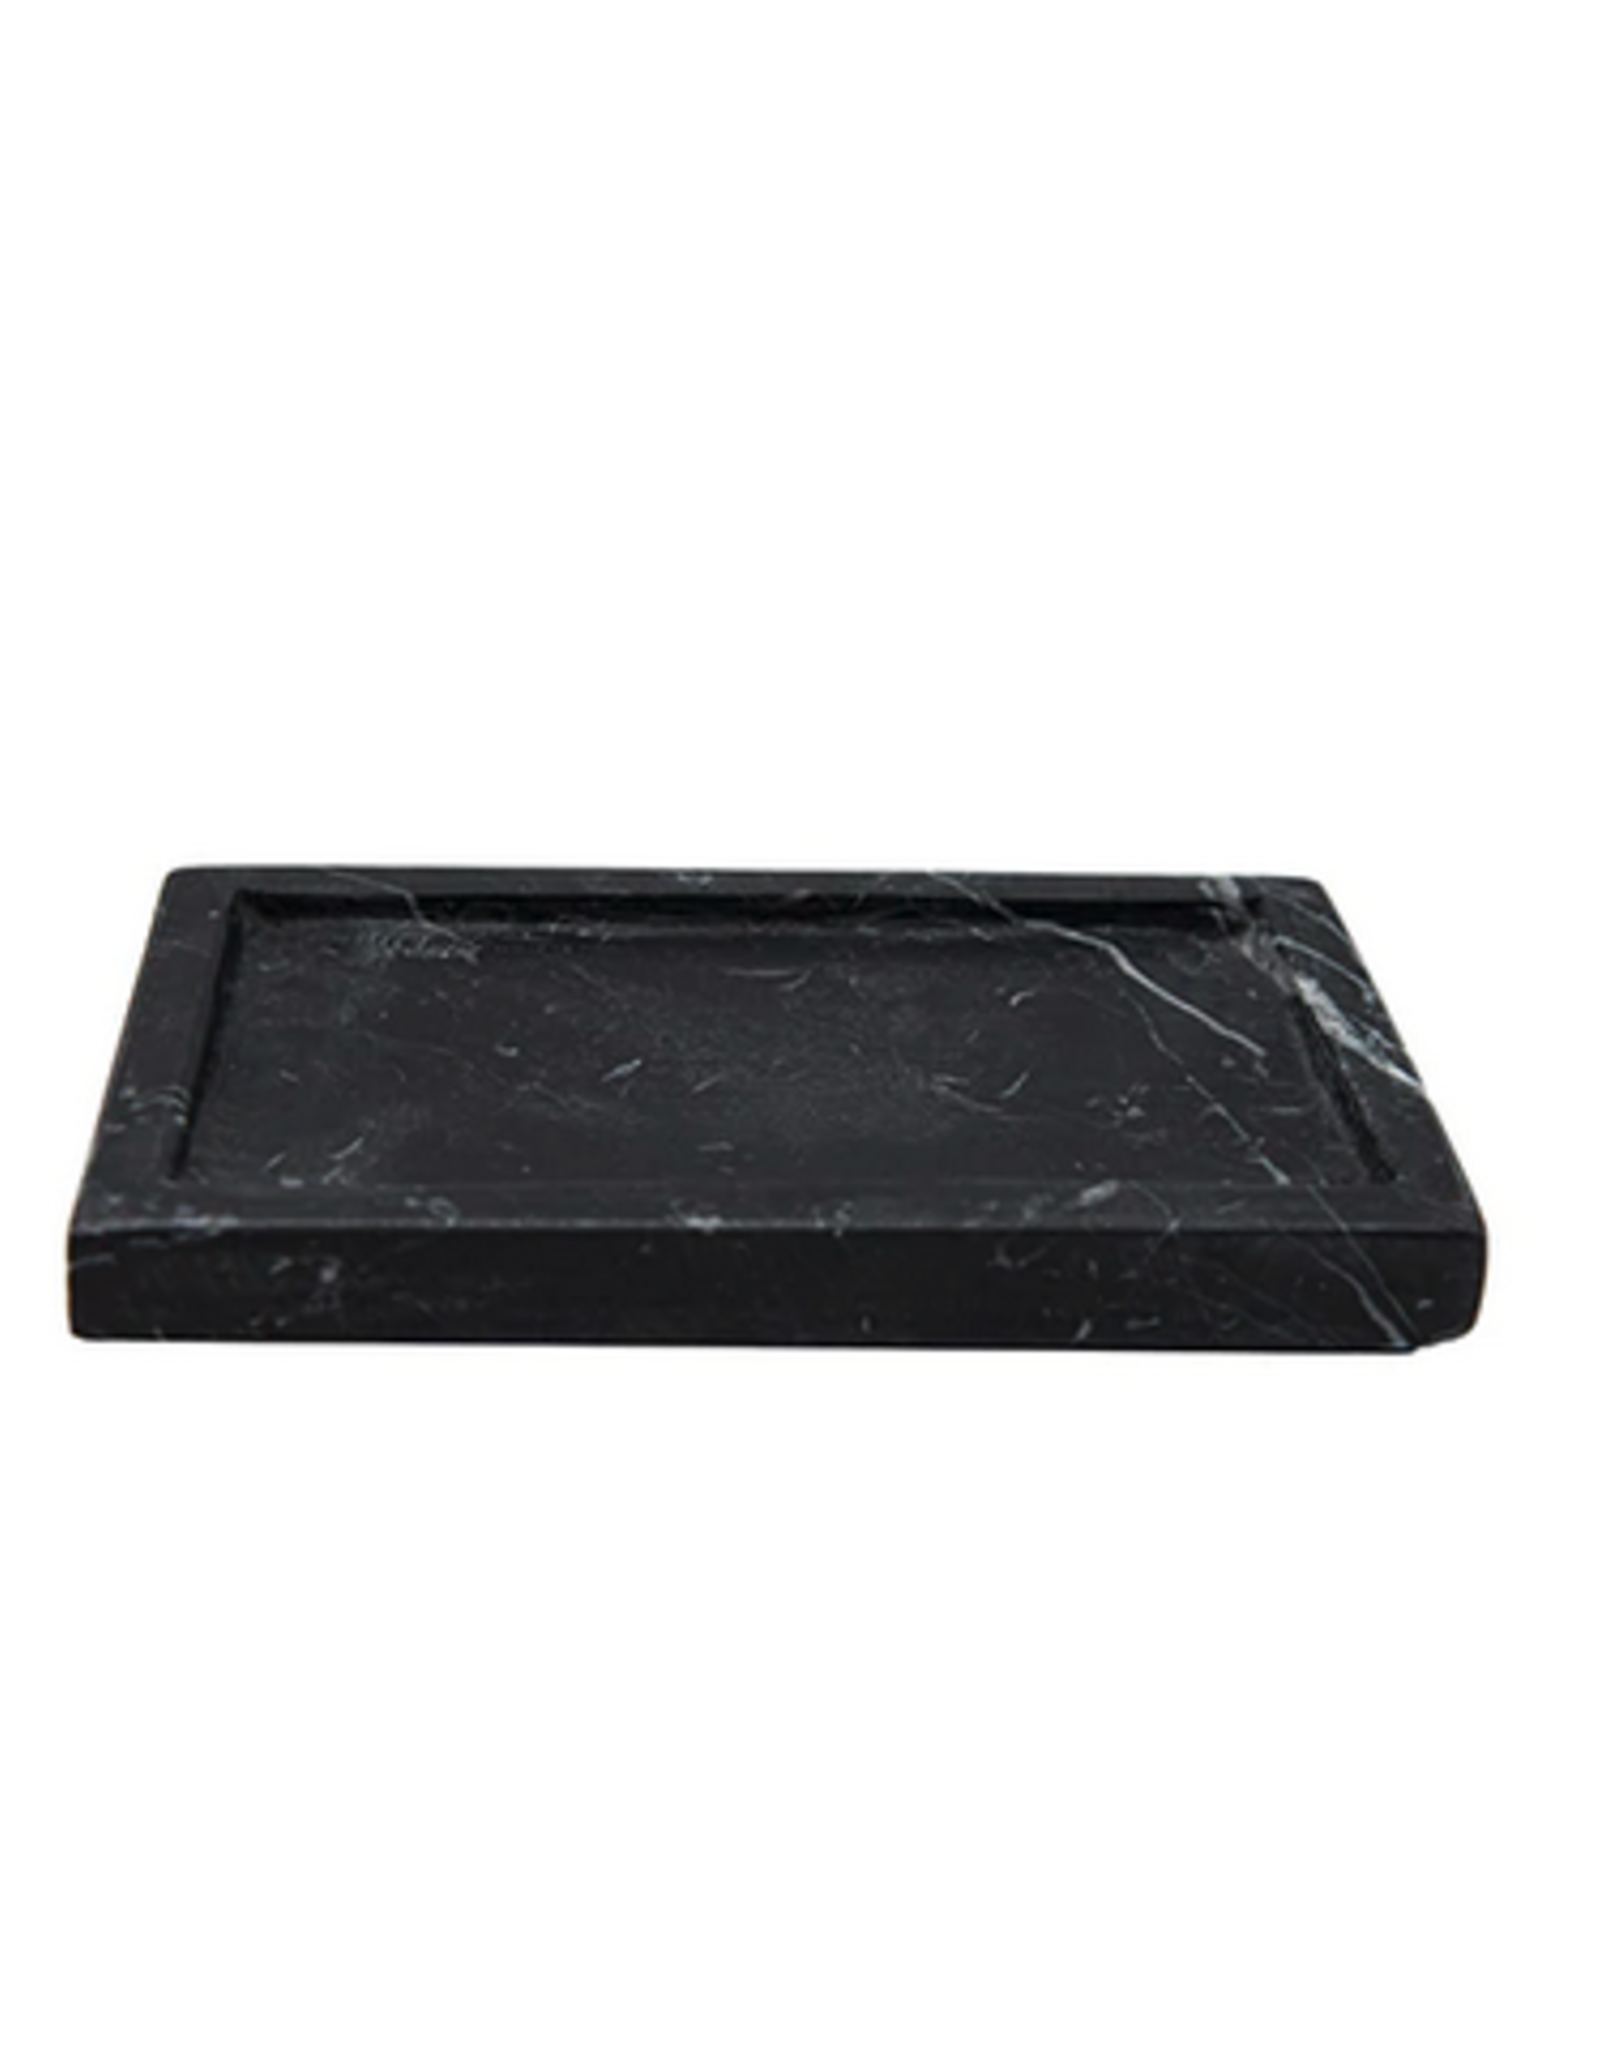 Black Marble Soap Dish L5.5" W3.5"